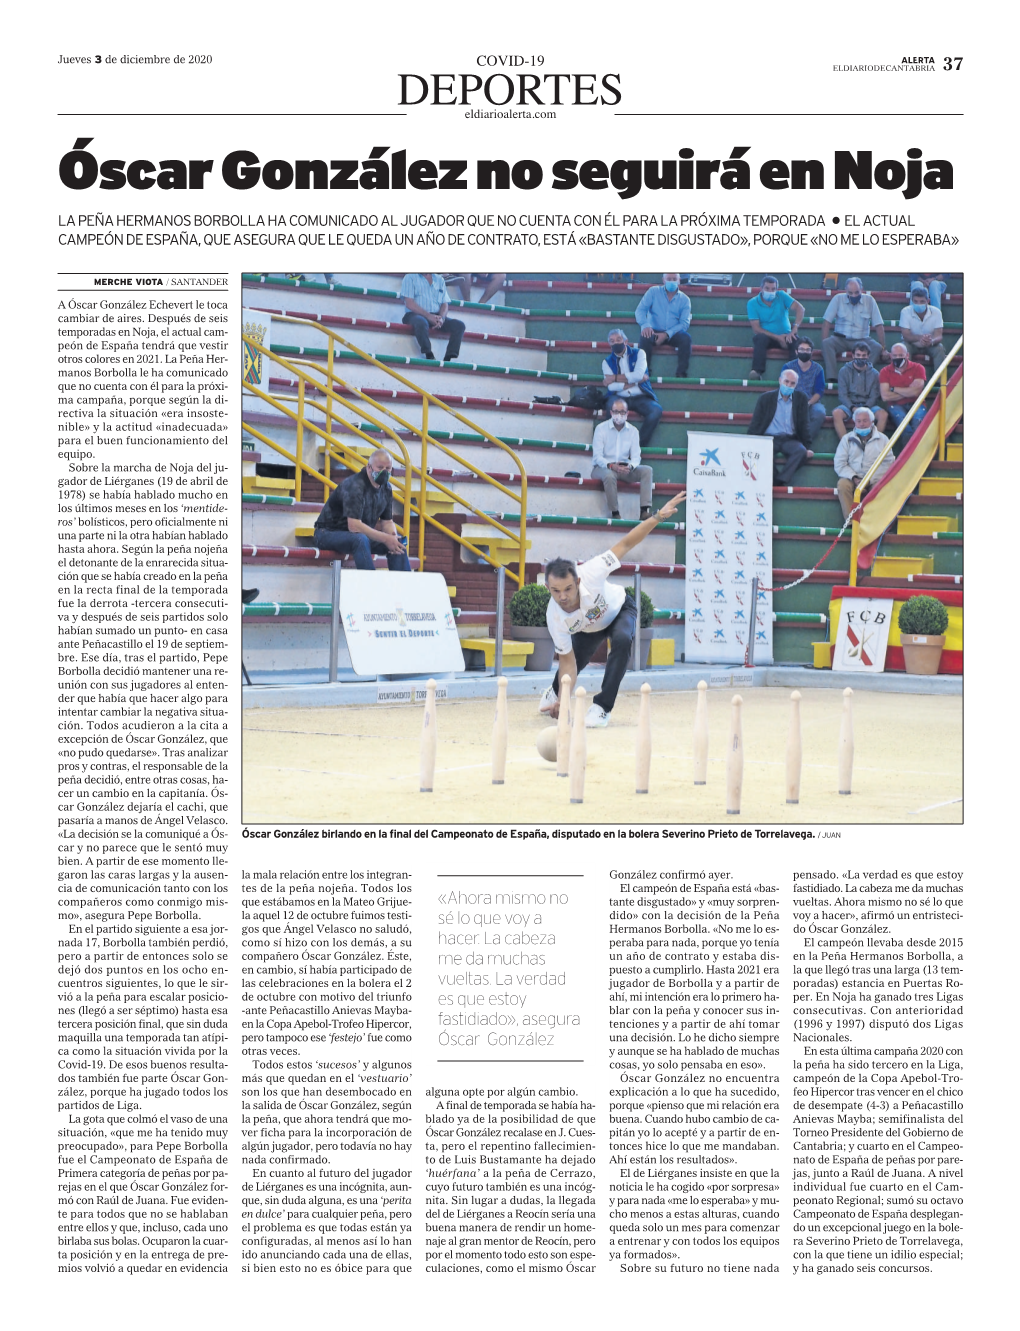 Óscar González No Seguirá En Noja